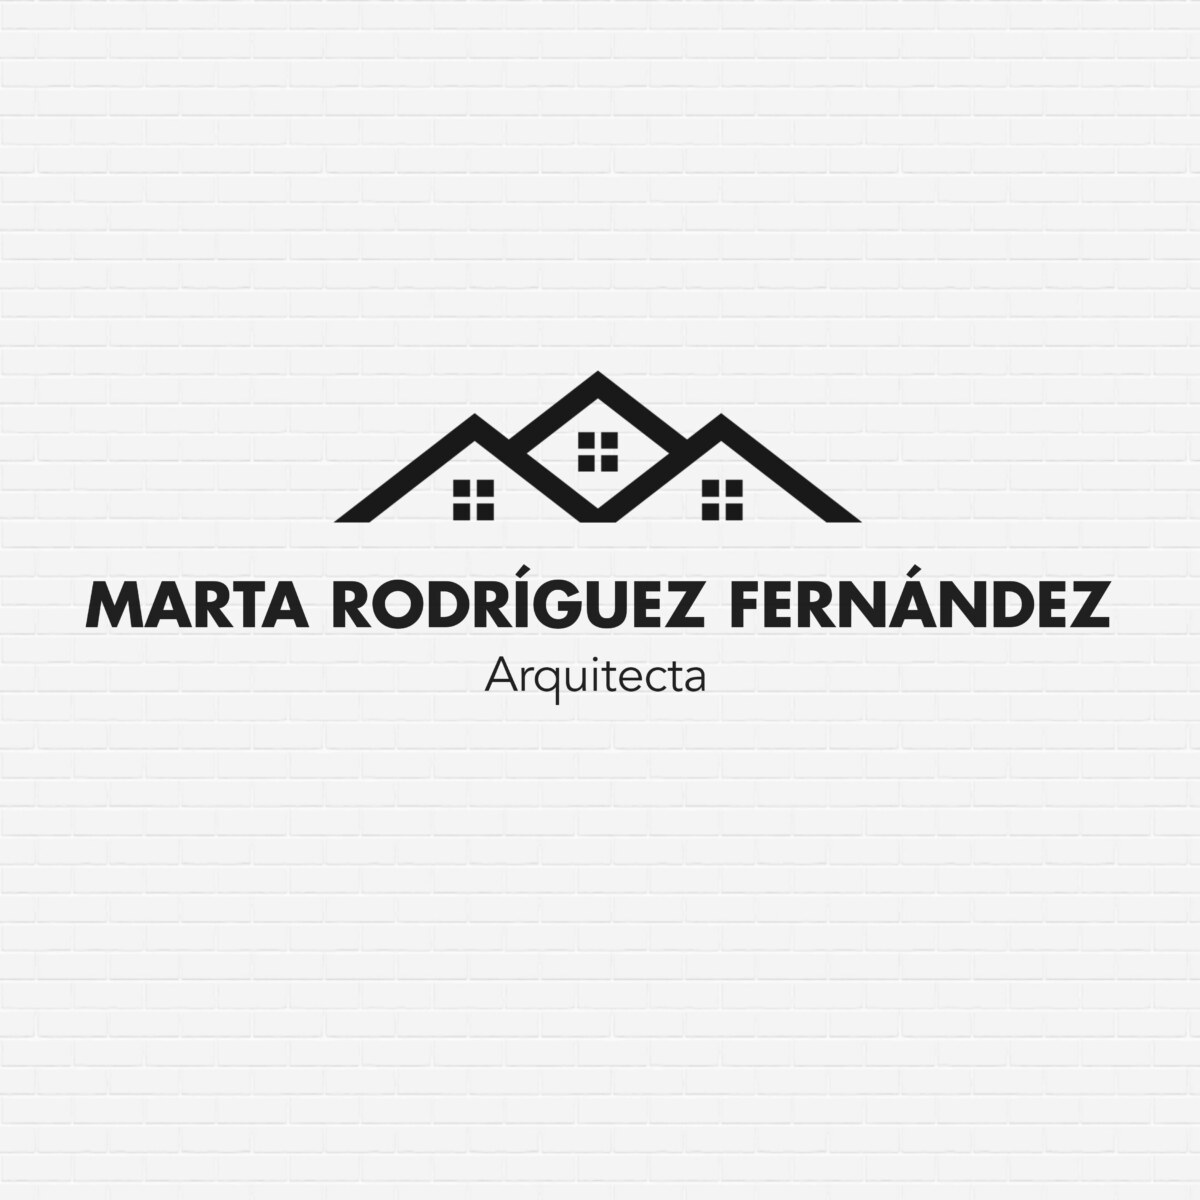 Marta Rodríguez Fernández